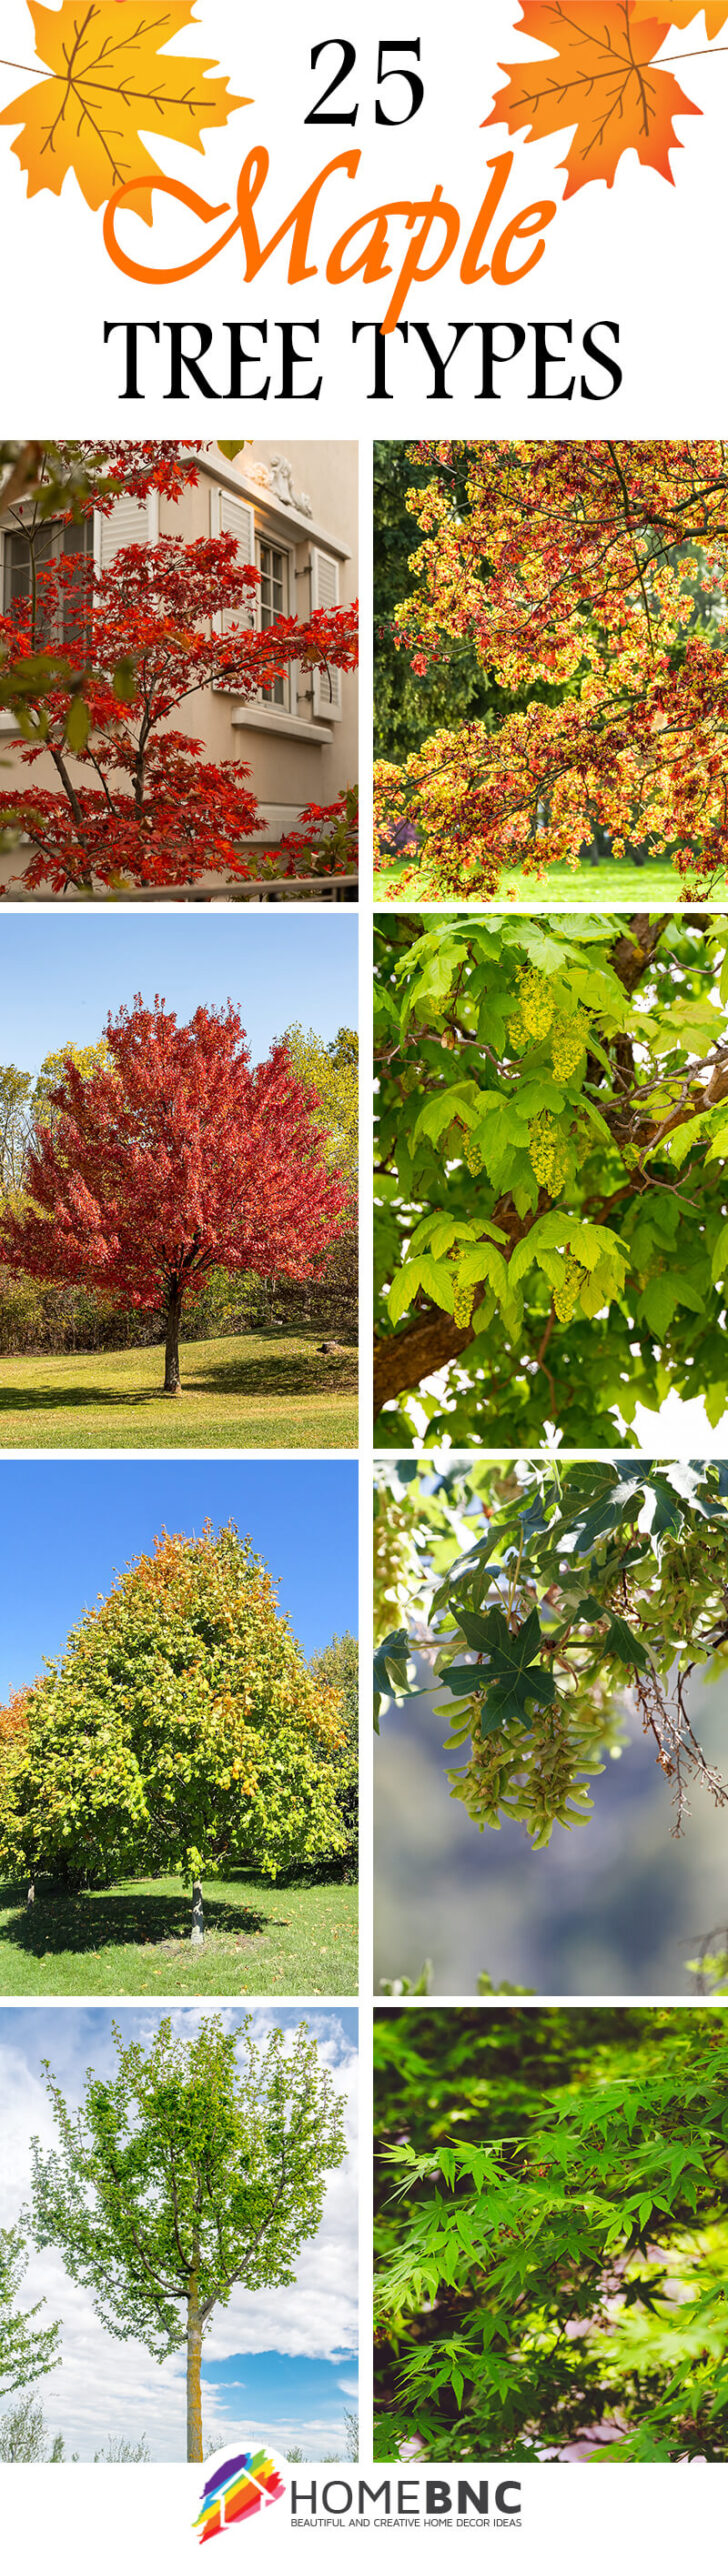 Species of Maple Trees